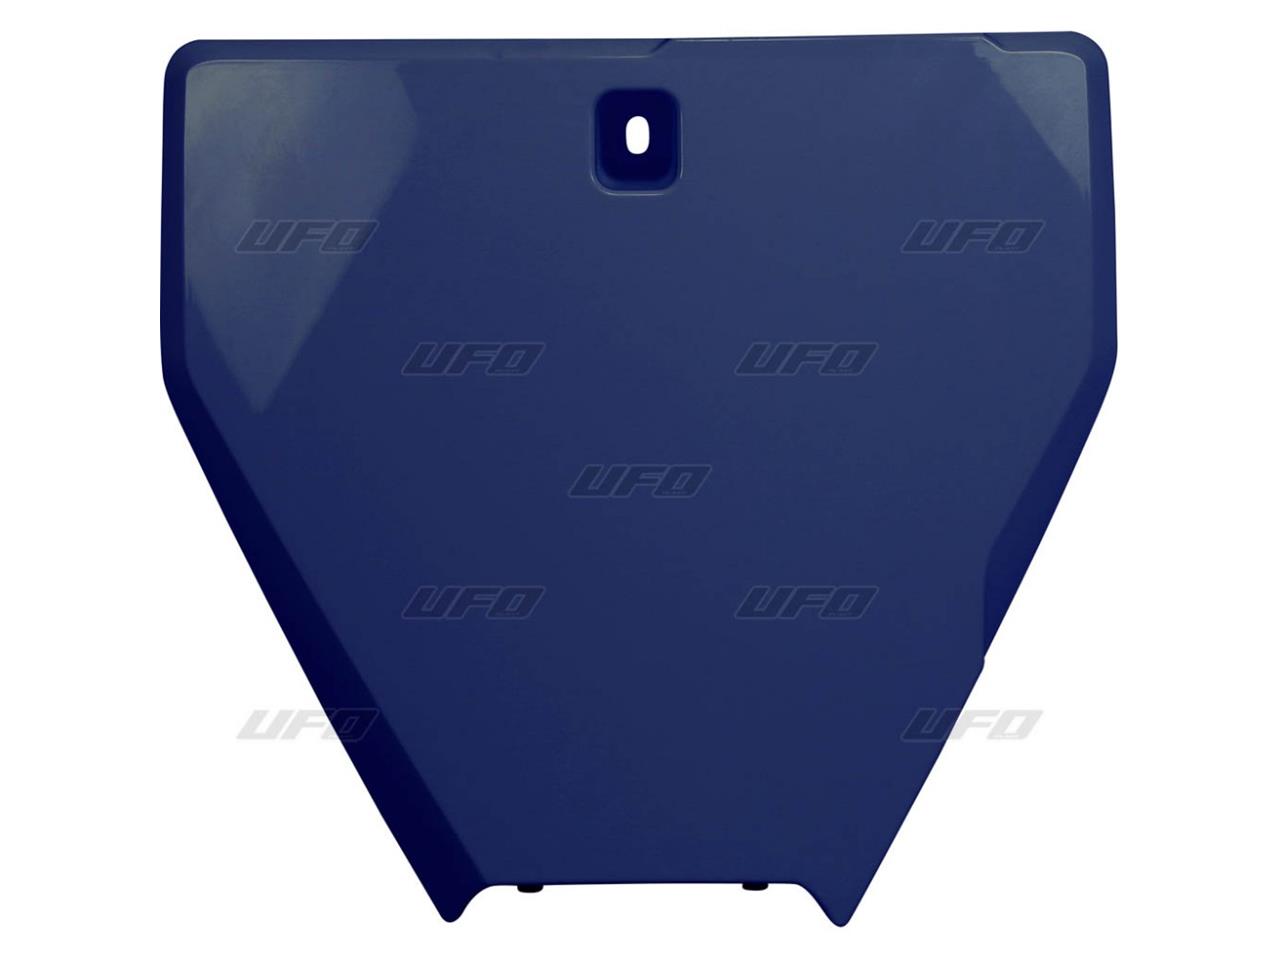 Plaque numéro frontale marque UFO bleu